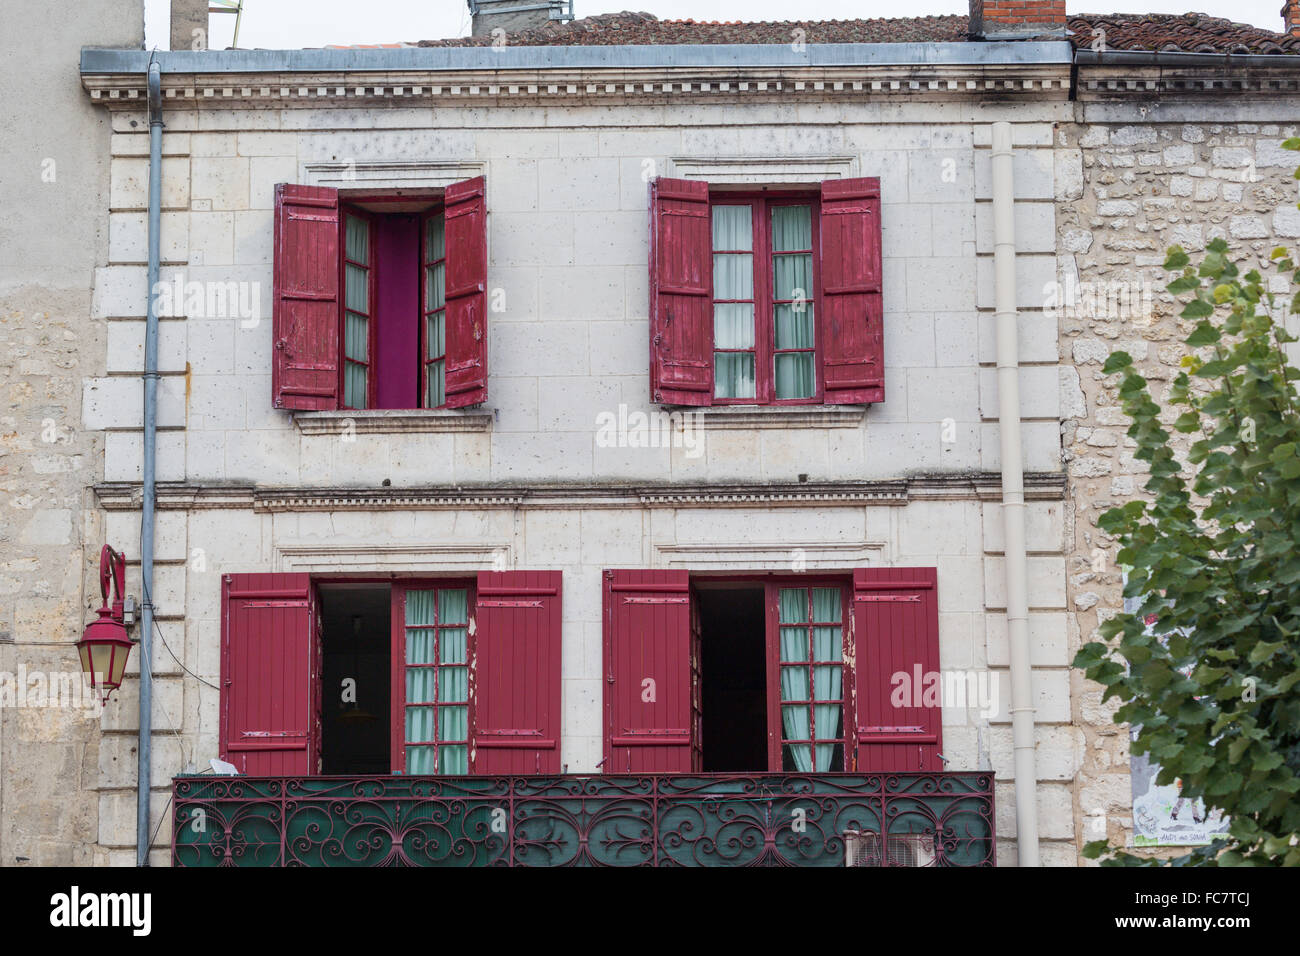 Fenêtres et volets sur house, Brantome, vallée de la Loire, France Banque D'Images